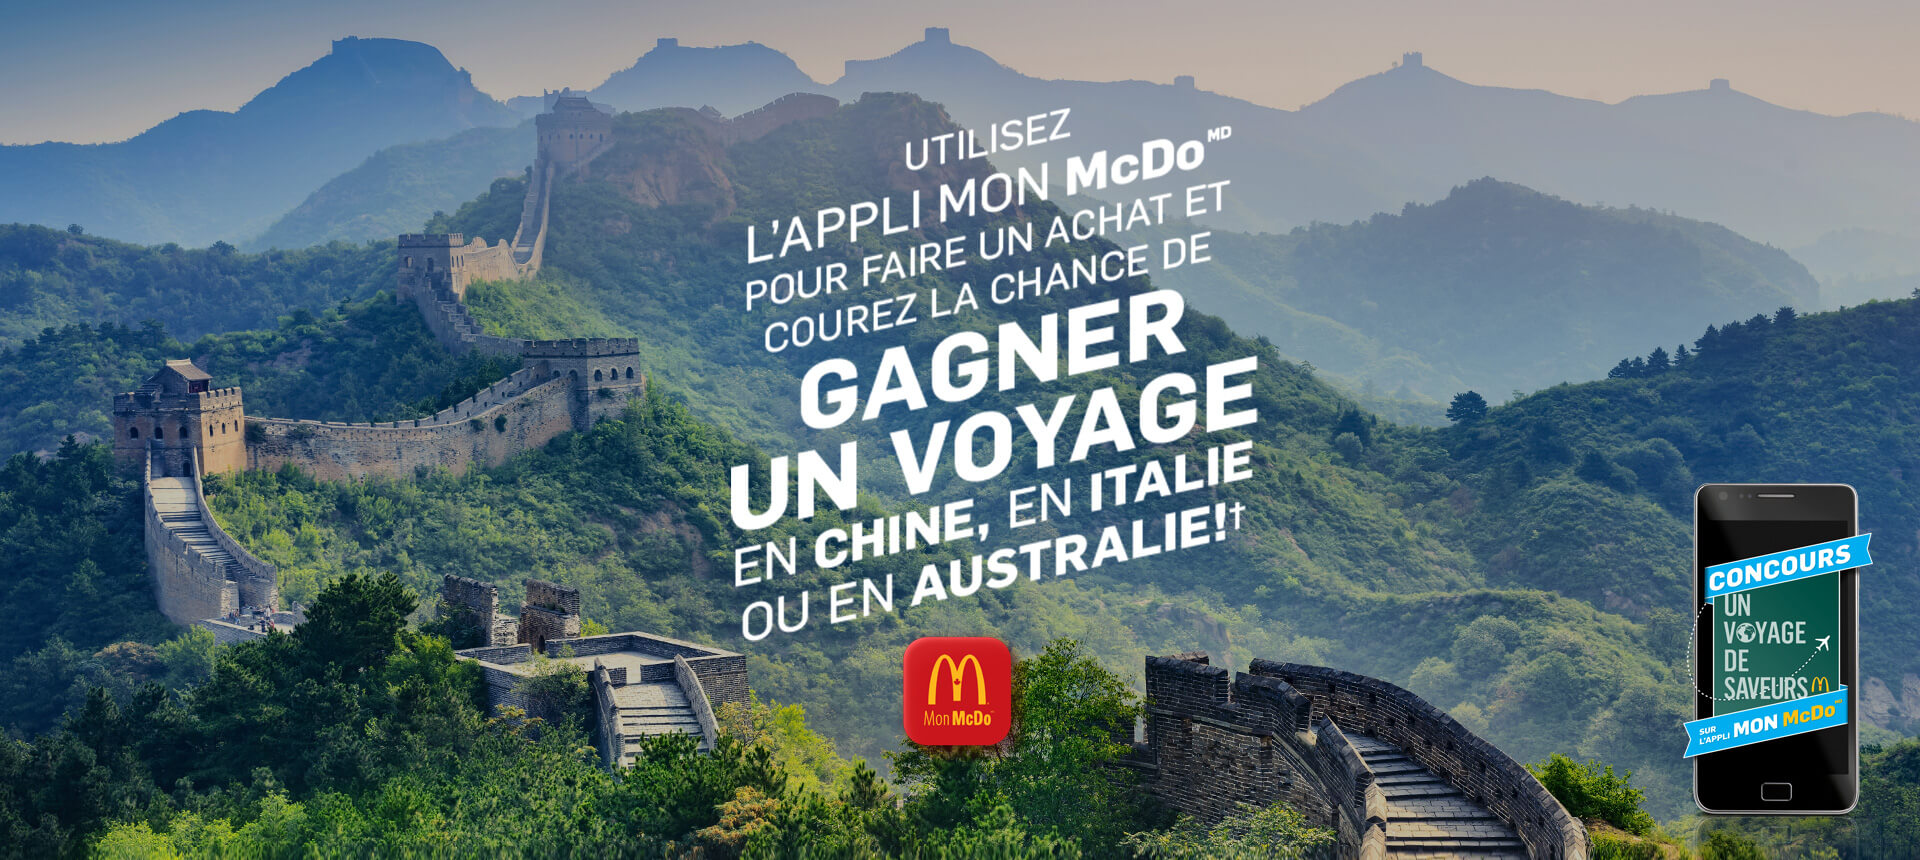 Concours McDonald's Un Voyage De Saveurs